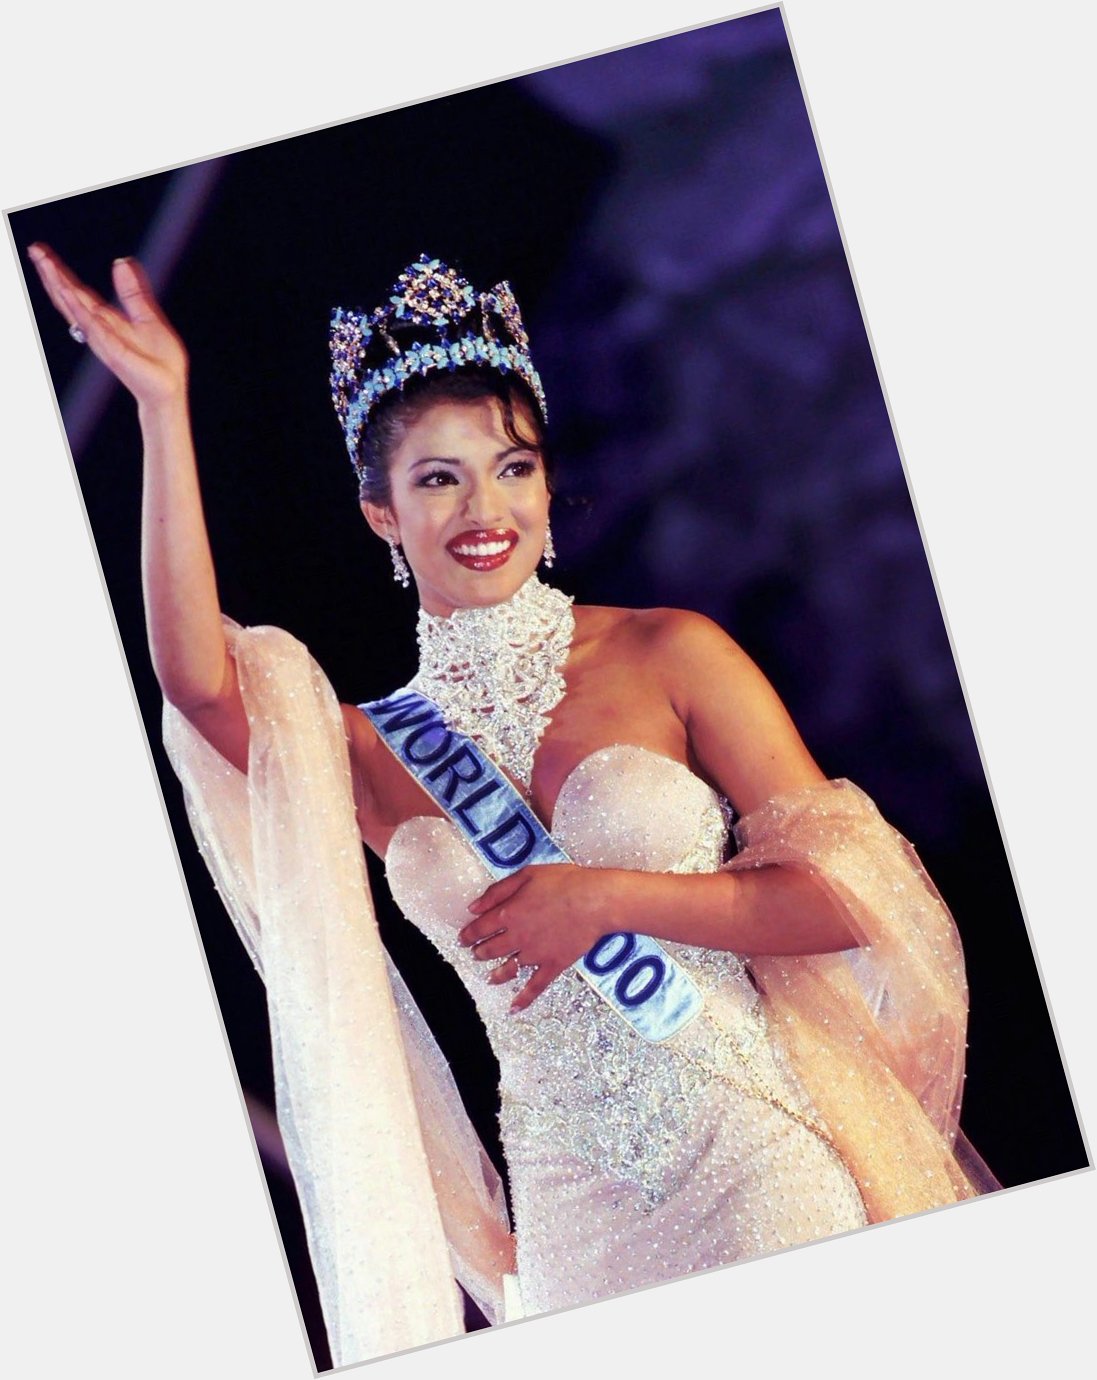 Priyanka Chopra, Miss World (2000)

Happy Birthday 